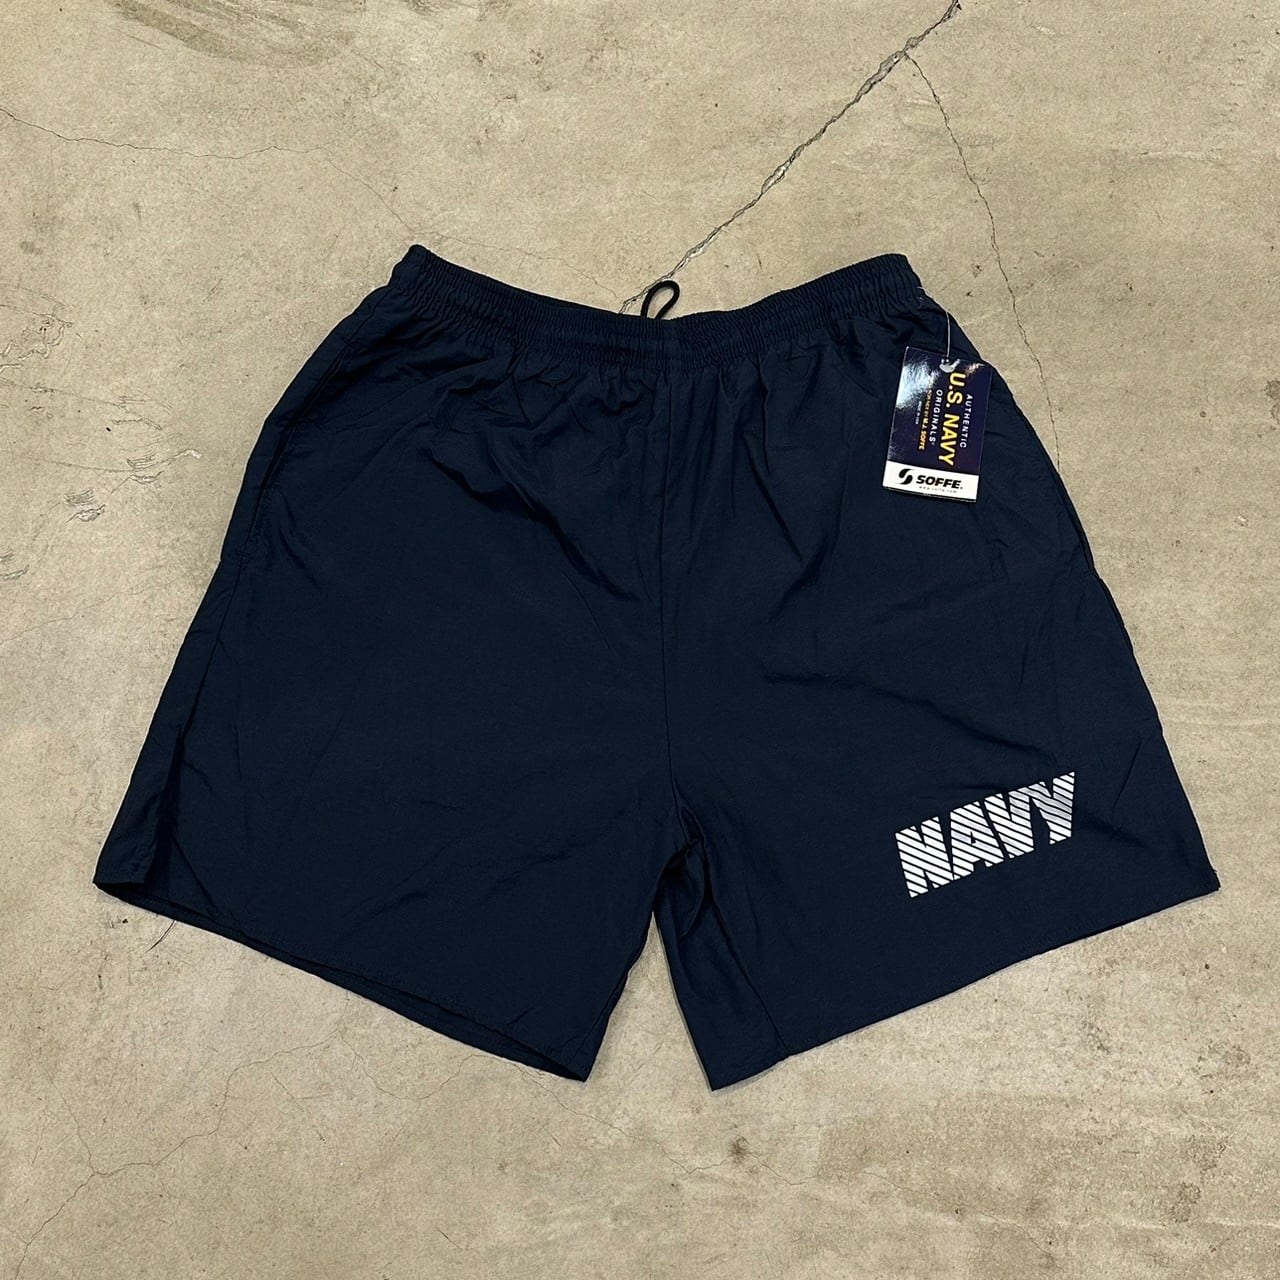 US Navy Physical Training Shorts